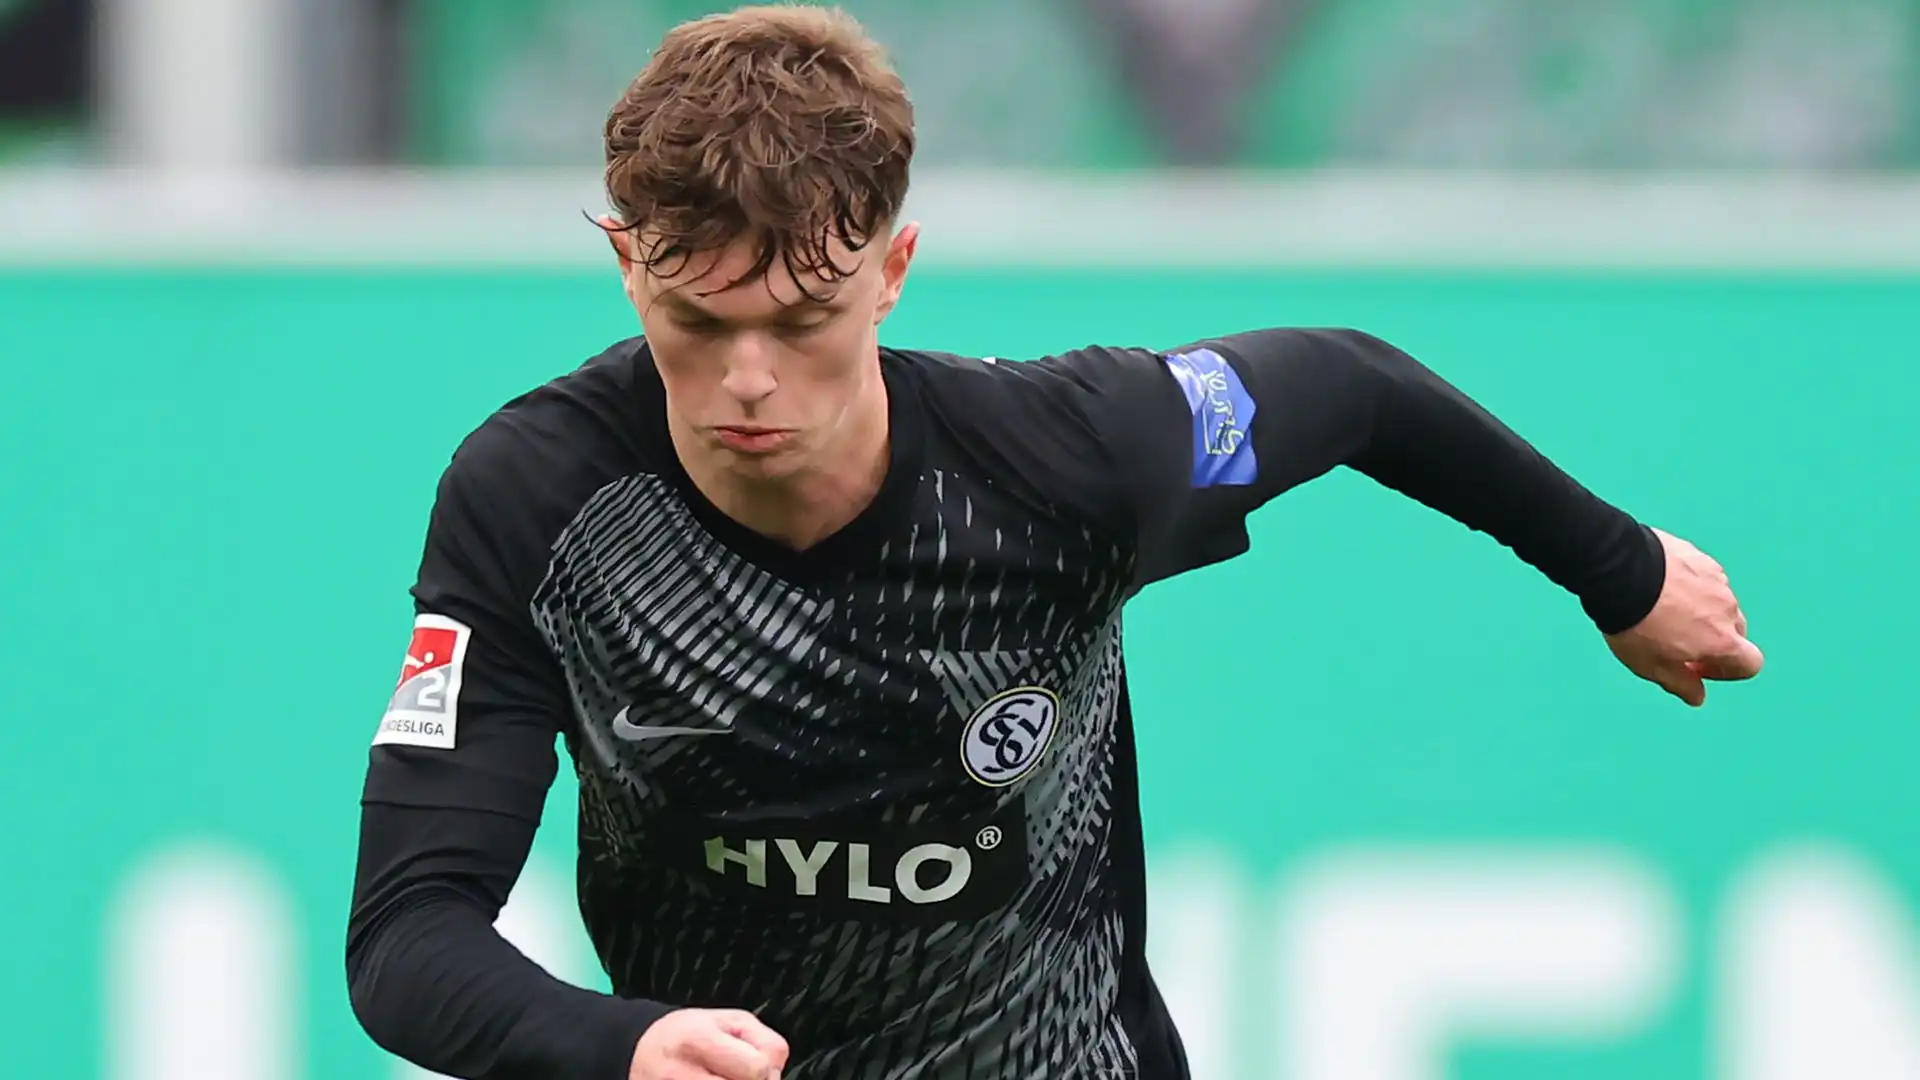 Il trequartista diciottenne ha disputato una buona stagione, contribuendo alla salvezza del club in 2. Bundesliga